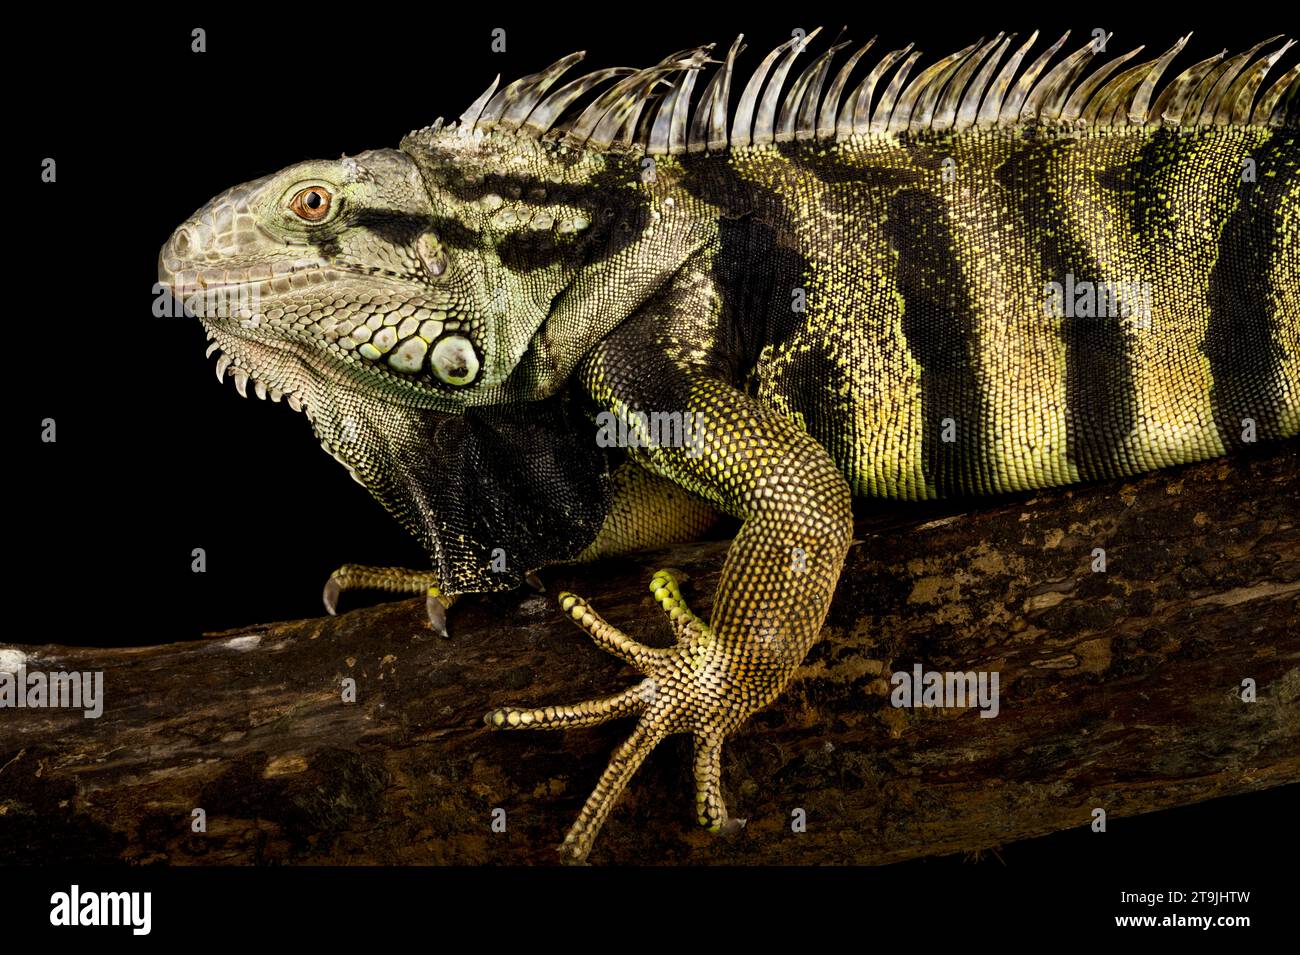 L'iguane vert (Iguana iguana) est une espèce variable de lézard géant. Ce spécimen vient de Colombie. Banque D'Images